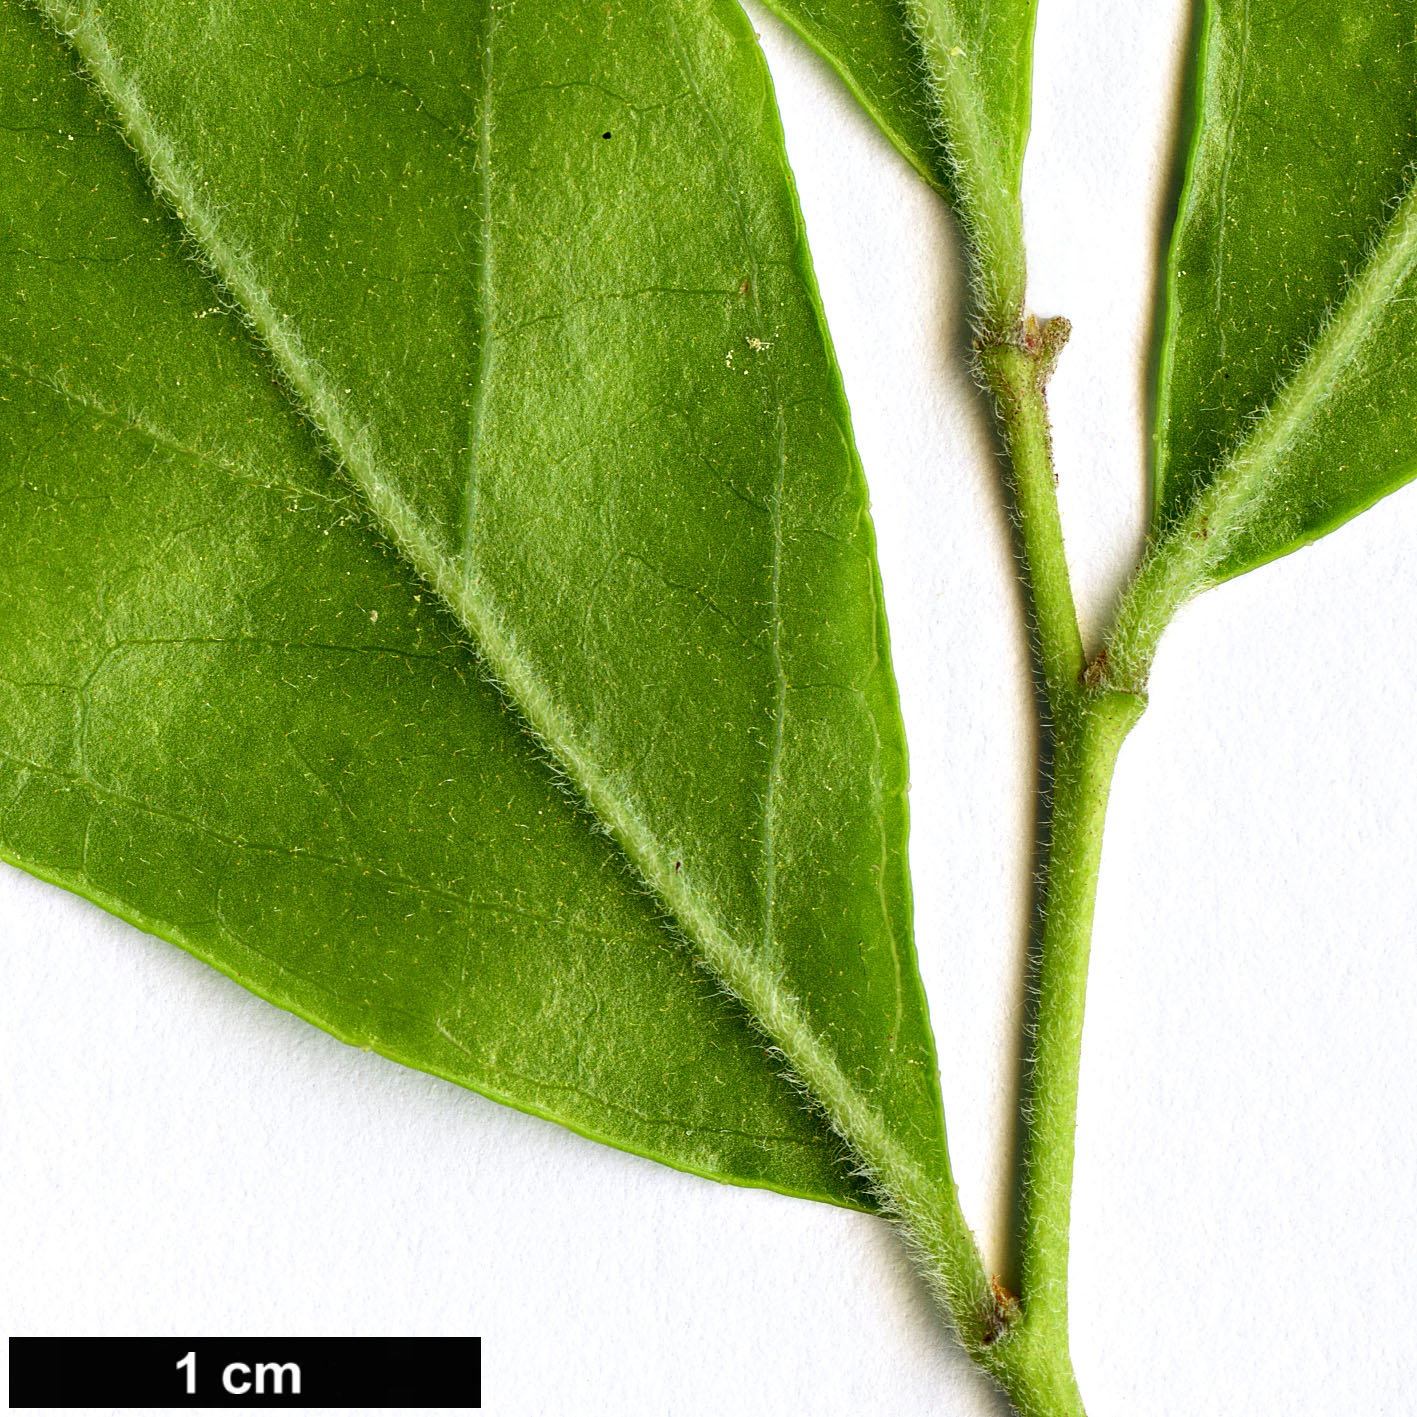 High resolution image: Family: Ericaceae - Genus: Vaccinium - Taxon: arboreum